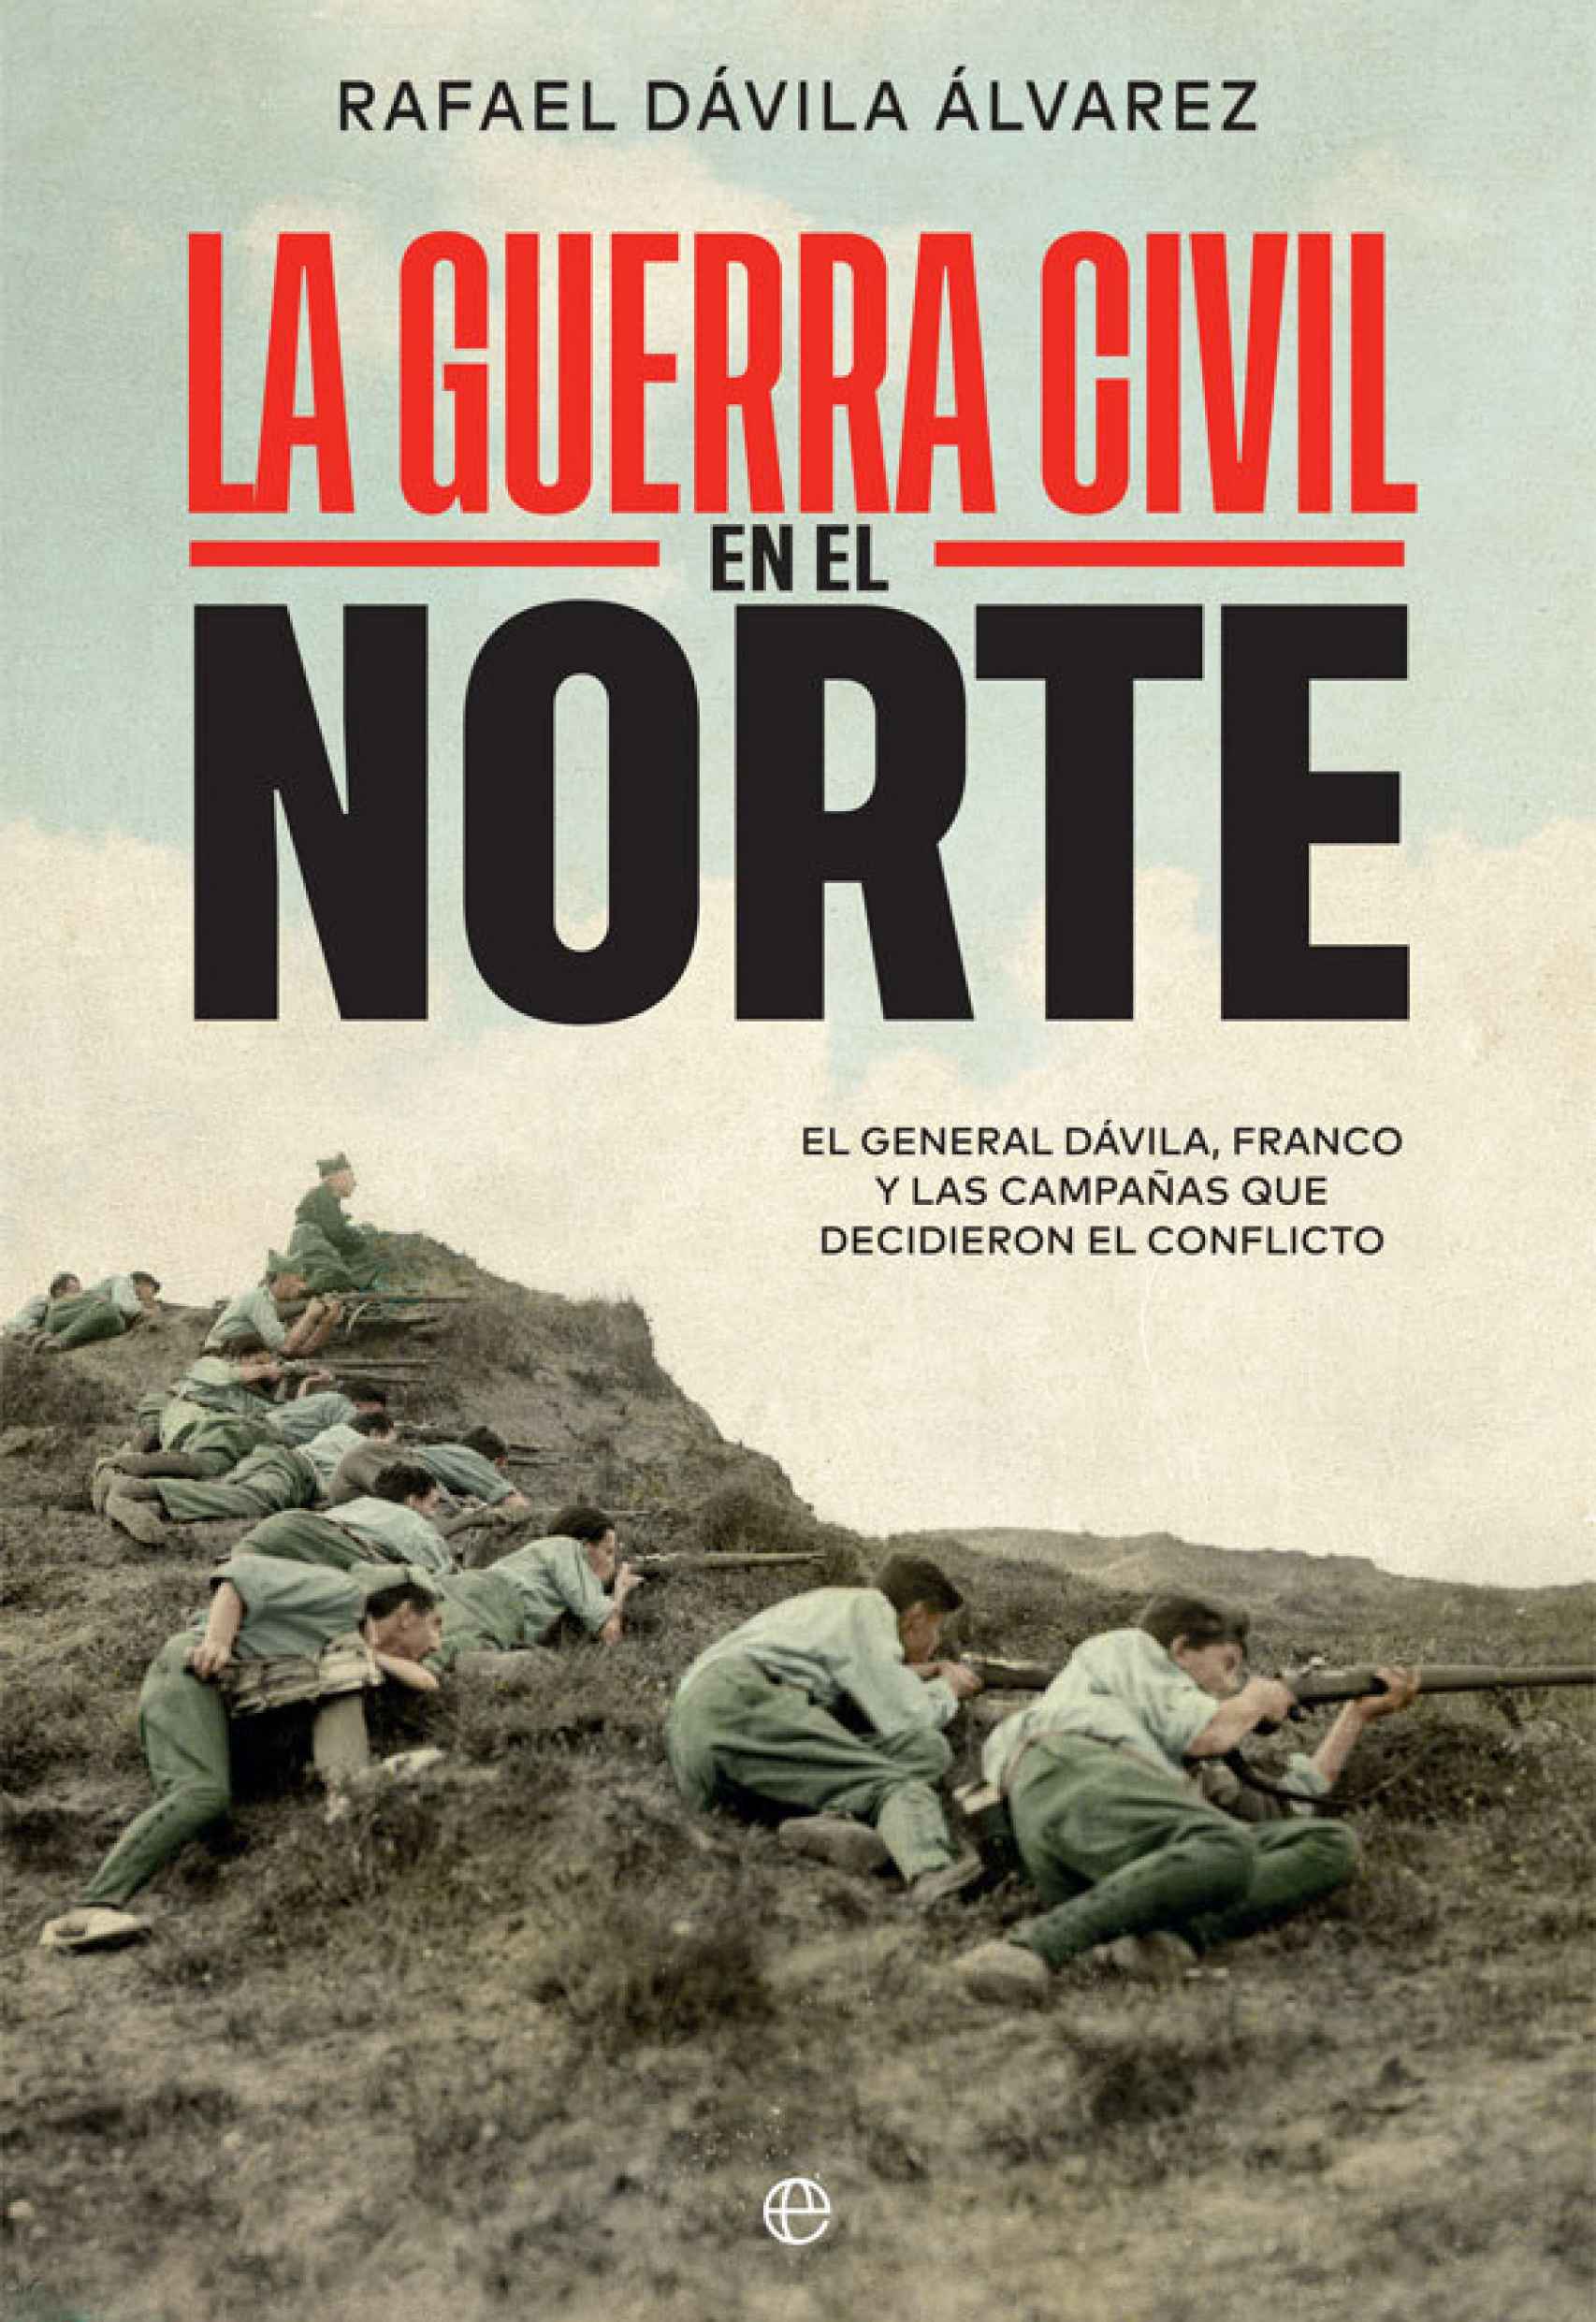 'La Guerra Civil en el Norte'.